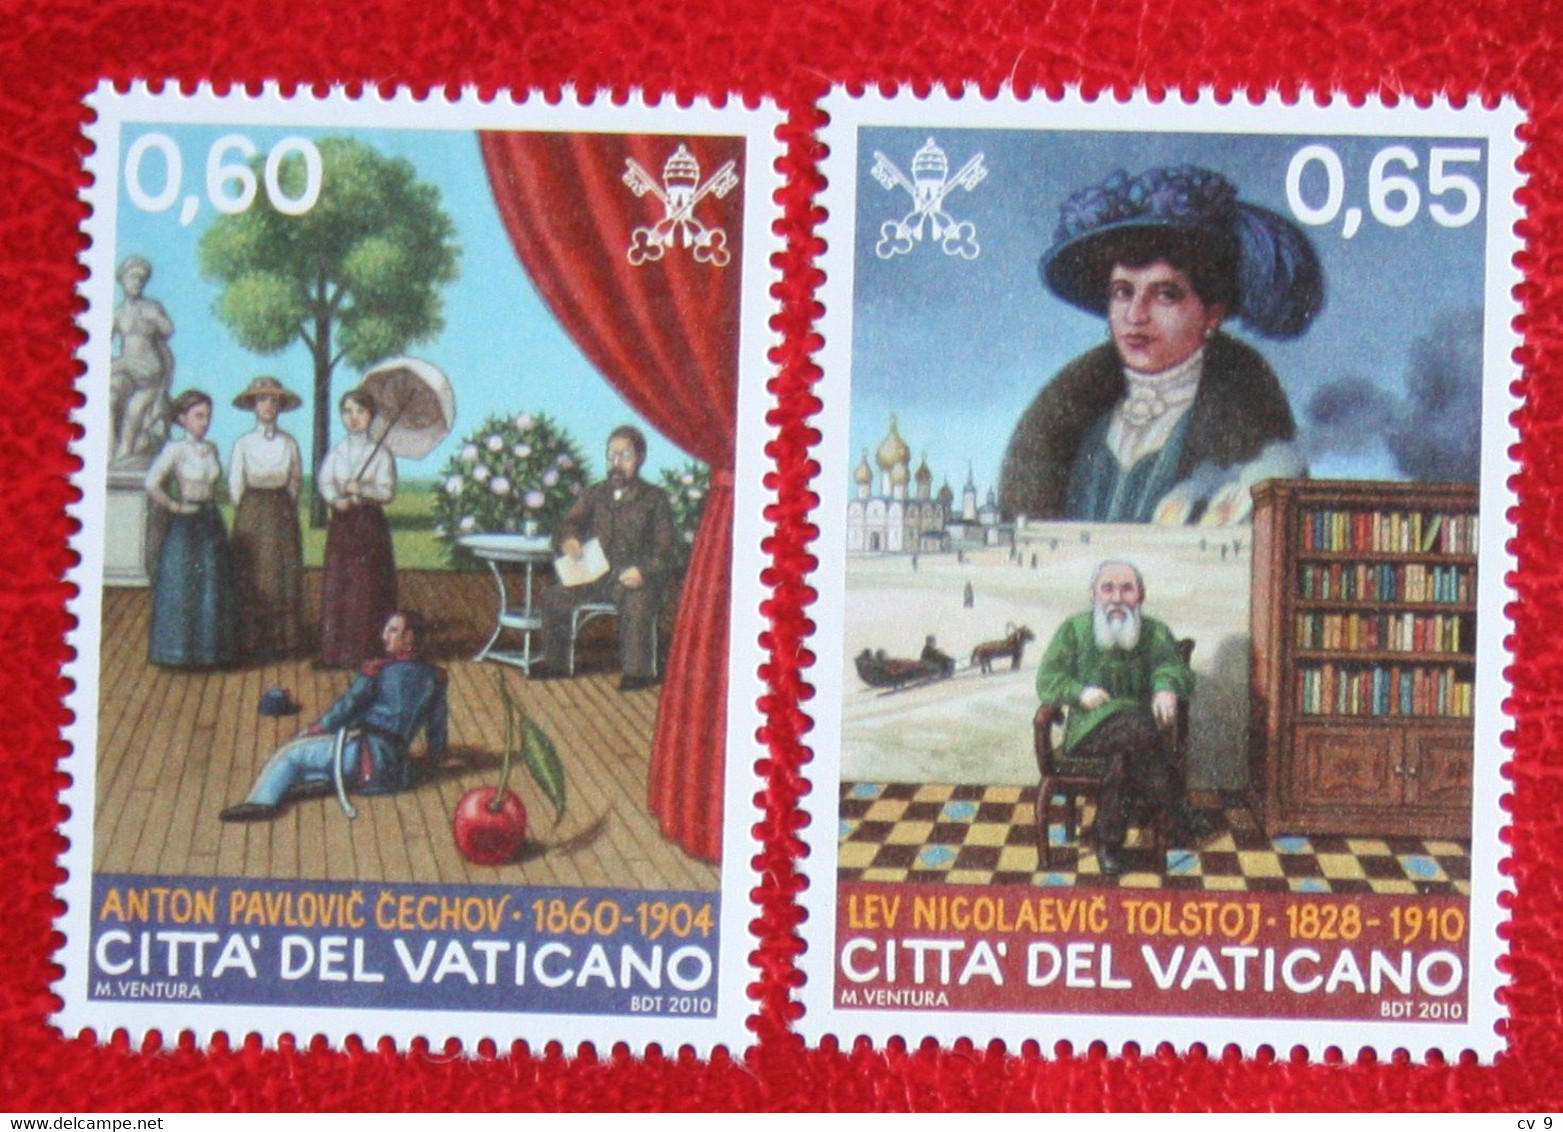 Russian Writers 2010 Mi 1681-1682 Yv 1538-1539 POSTFRIS / MNH / **  VATICANO VATICAN VATICAAN - Unused Stamps